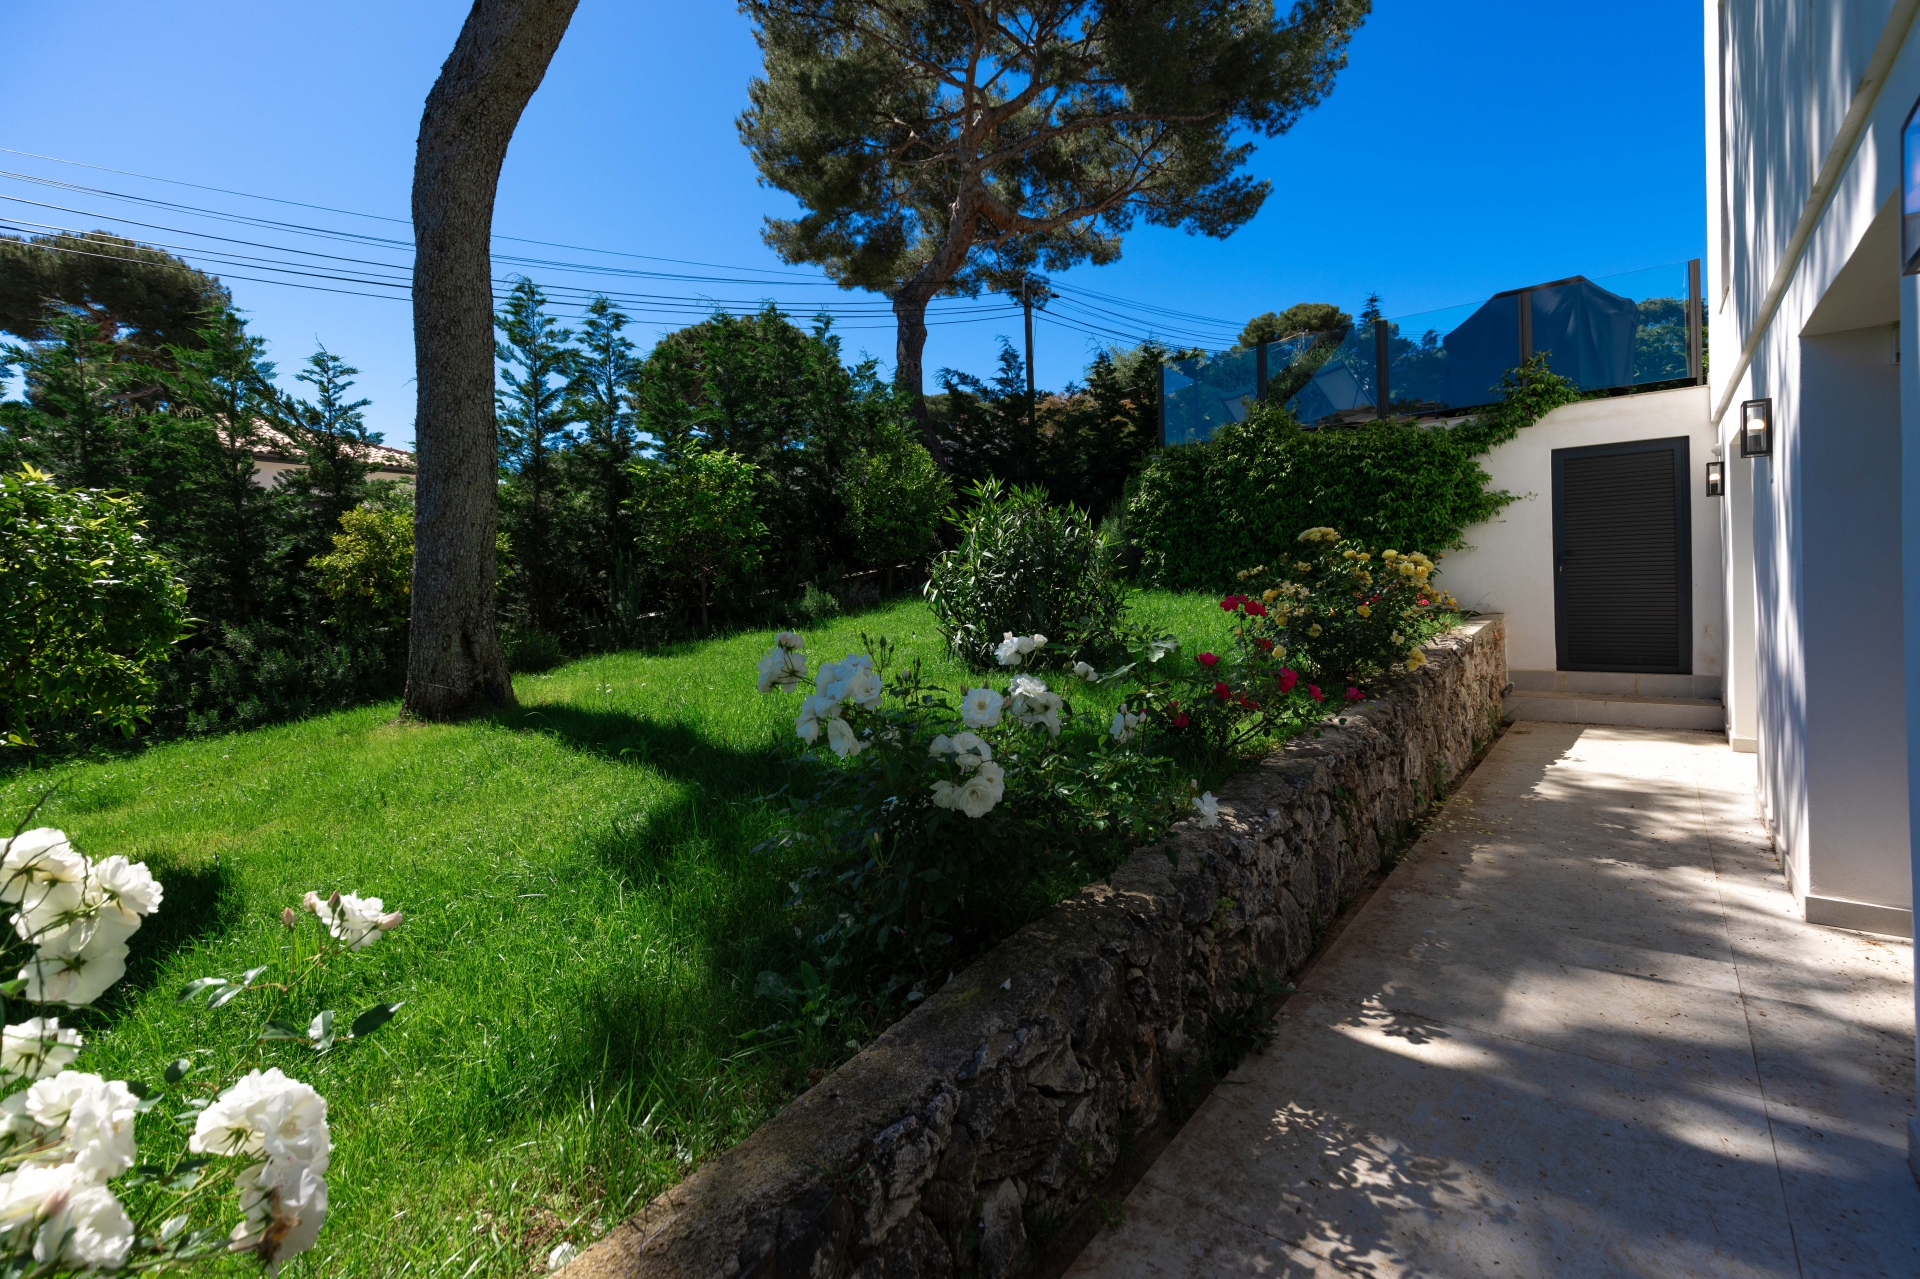 Dotta Villa a vendre - VILLA STECYA - Roquebrune-Cap-Martin - Roquebrune-Cap-Martin - img074a5150